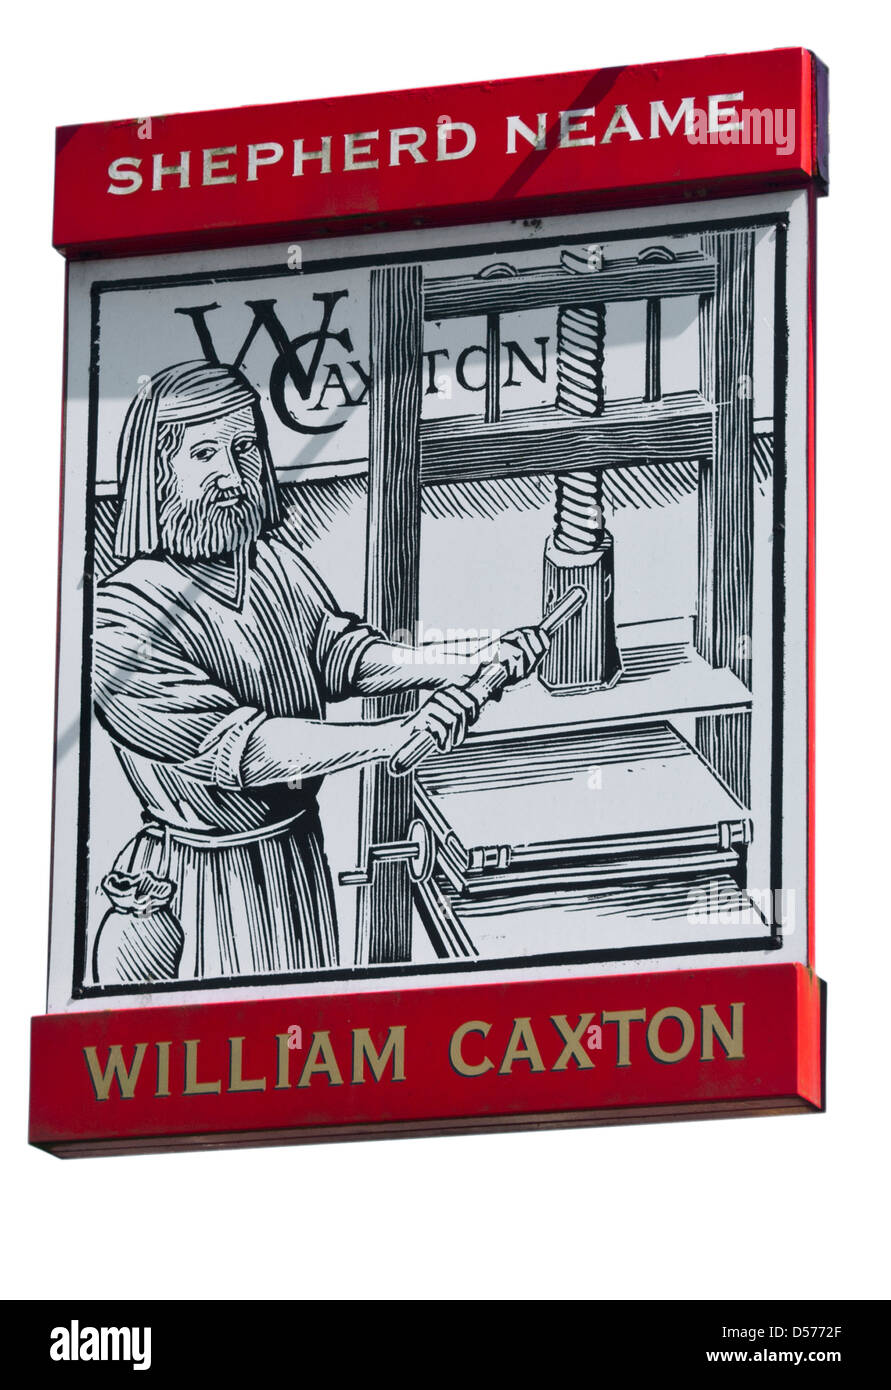 La William Caxton enseigne de pub Shepherd Neame UK Pubs signe Banque D'Images